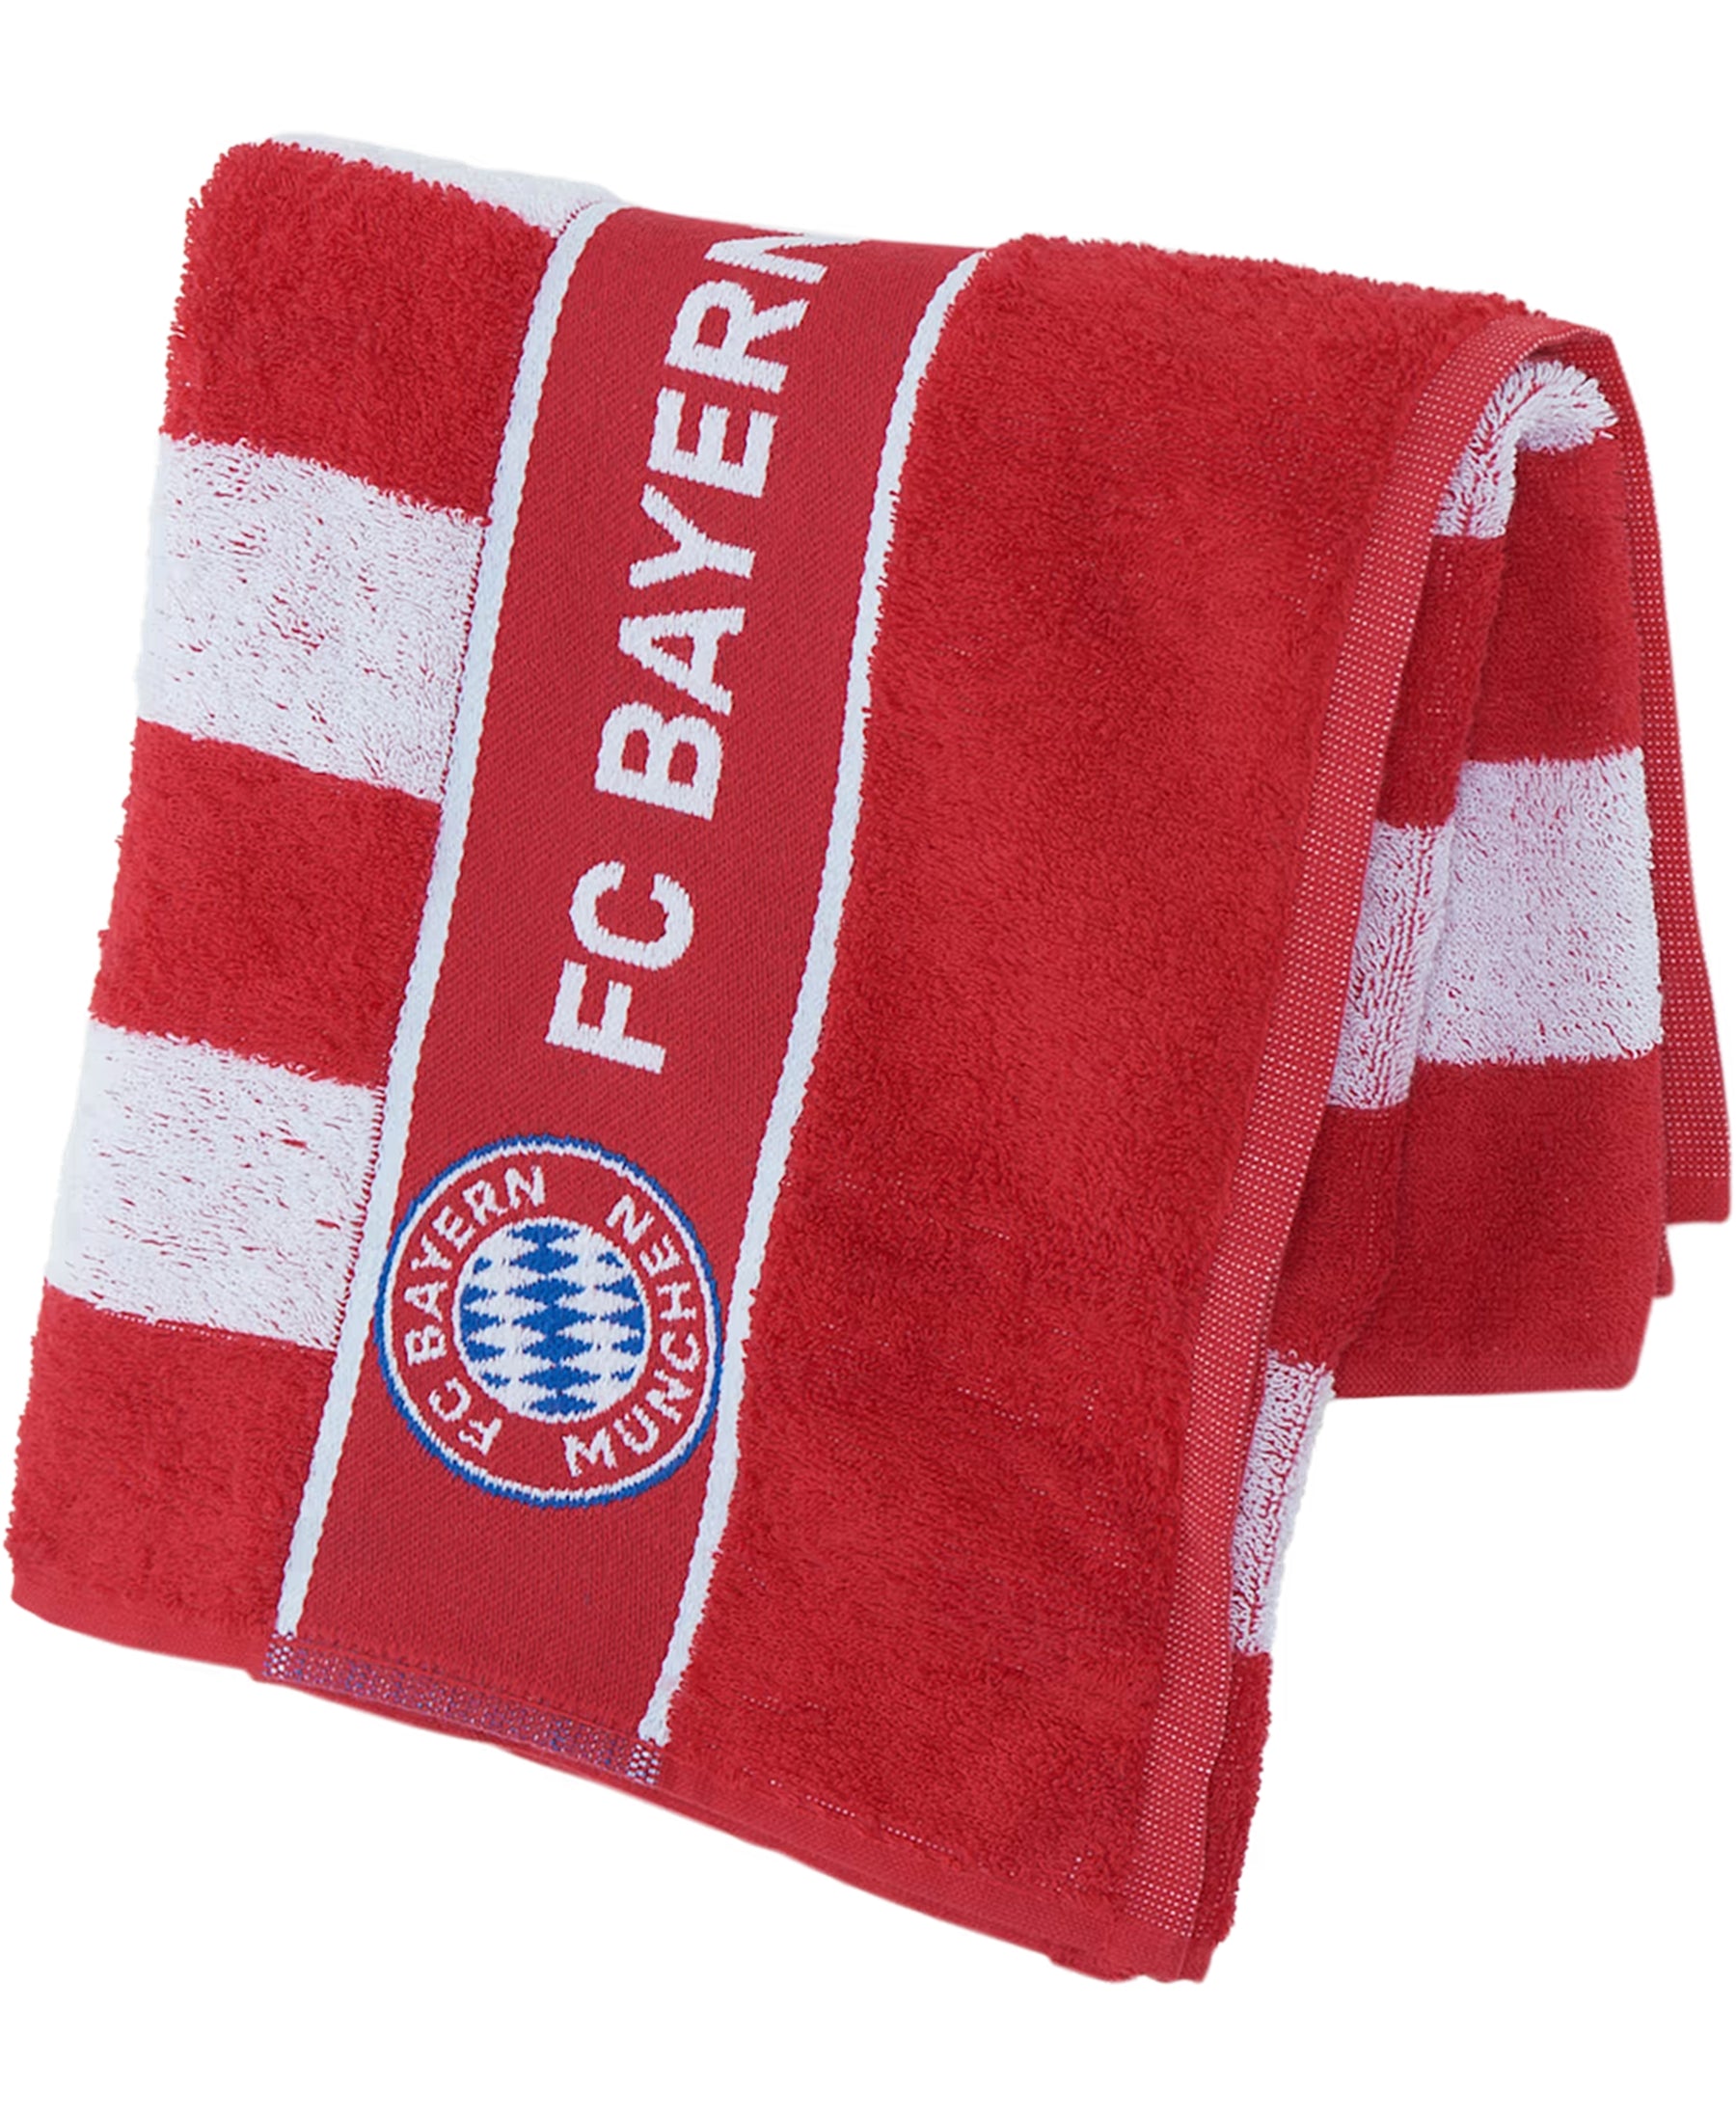 Das FC Bayern München FCB Handtuch (28369) ist ein Muss für alle Fans des Vereins. Mit dem gestickten Vereinslogo ist es nicht nur praktisch, sondern auch ein echter Hingucker im Badezimmer. Dieses hochwertige Handtuch ist saugfähig und strapazierfähig. Holen Sie sich jetzt das offizielle Fanartikel bei SHOP4TEAMSPORT und zeigen Sie Ihre Unterstützung für den FC Bayern München.